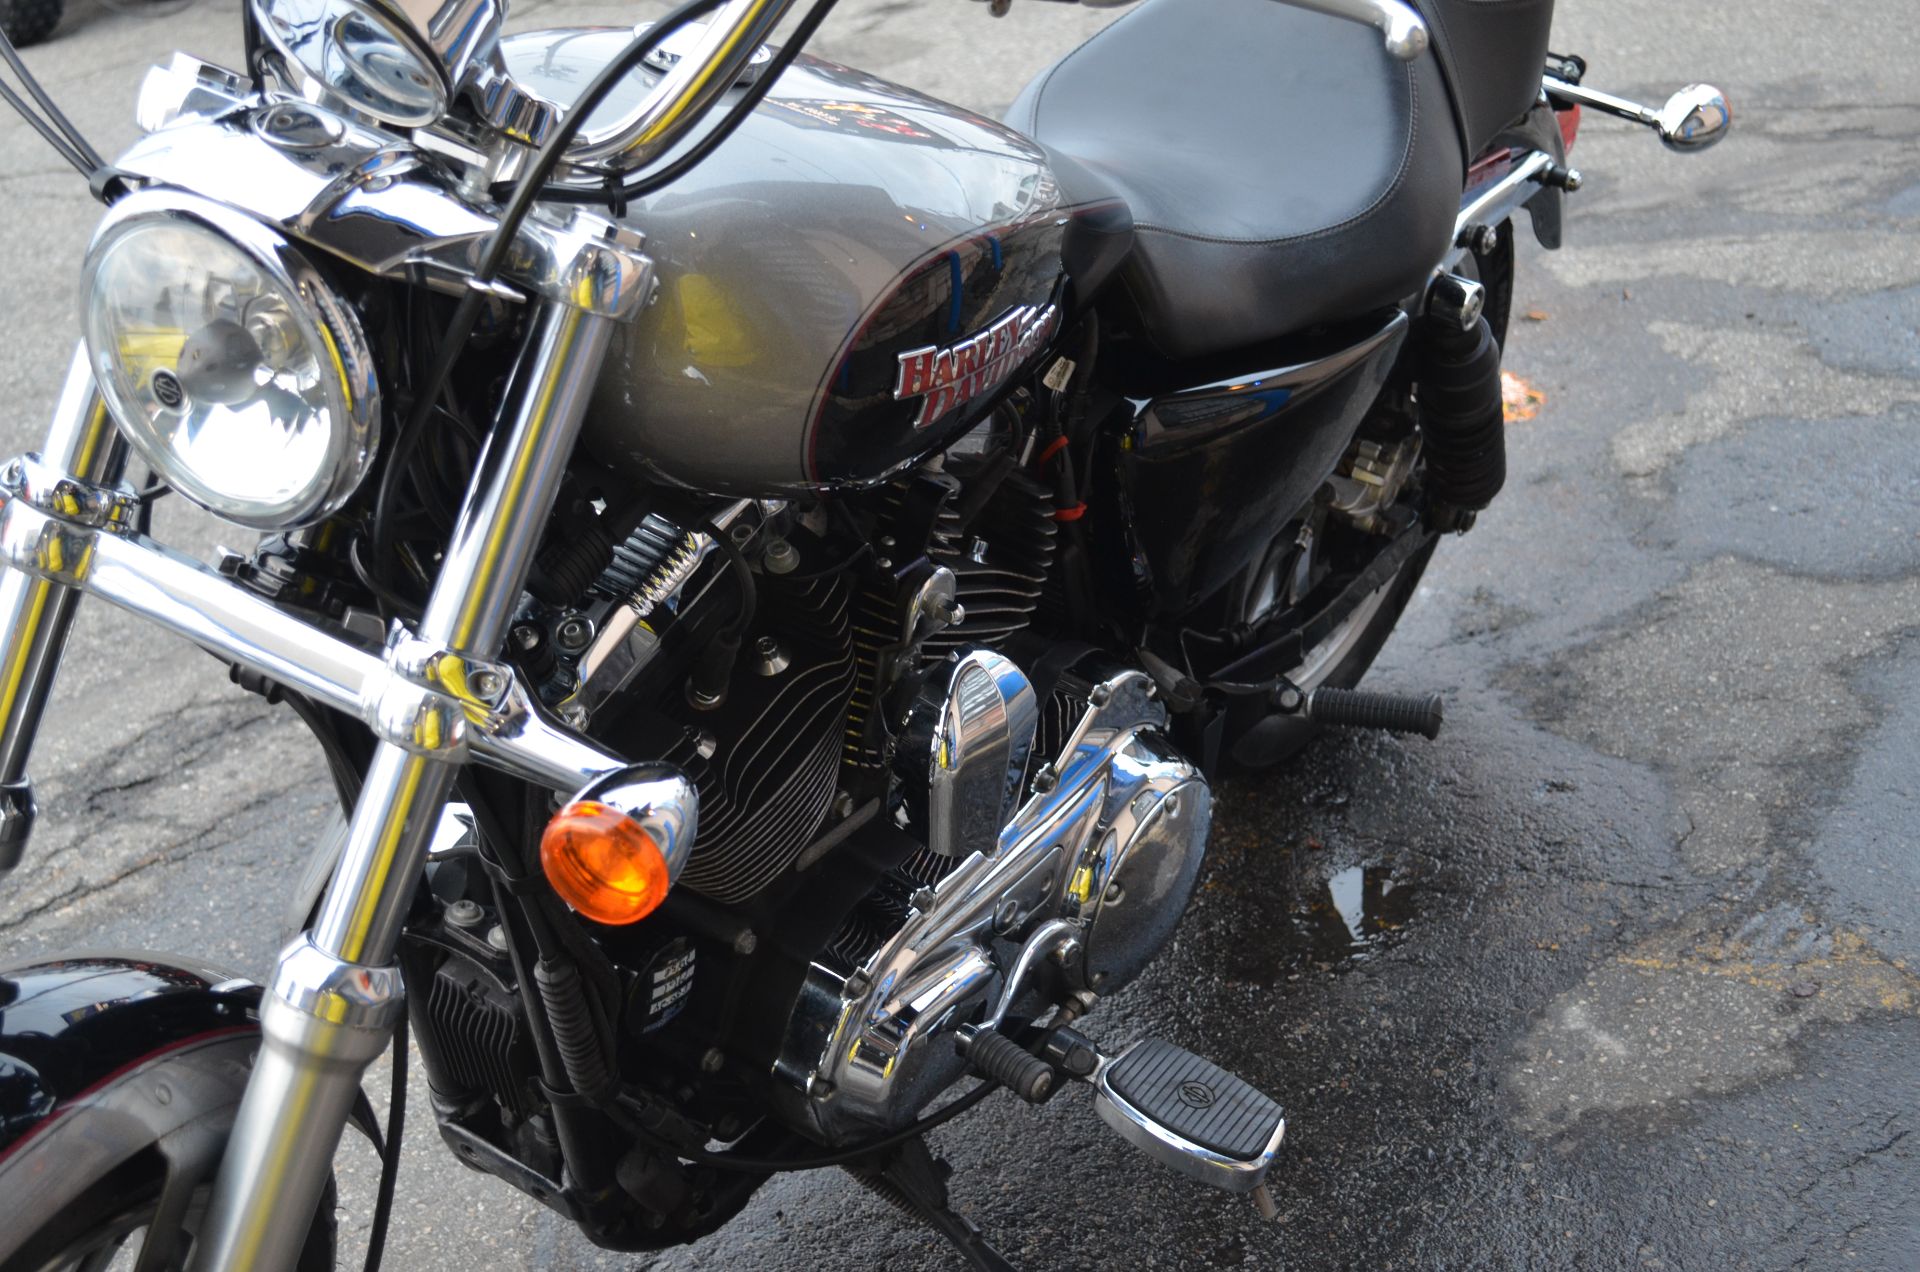 2016 Harley Davidson SPORTSTER XL1200T SUPERLOW in Revere, Massachusetts - Photo 9